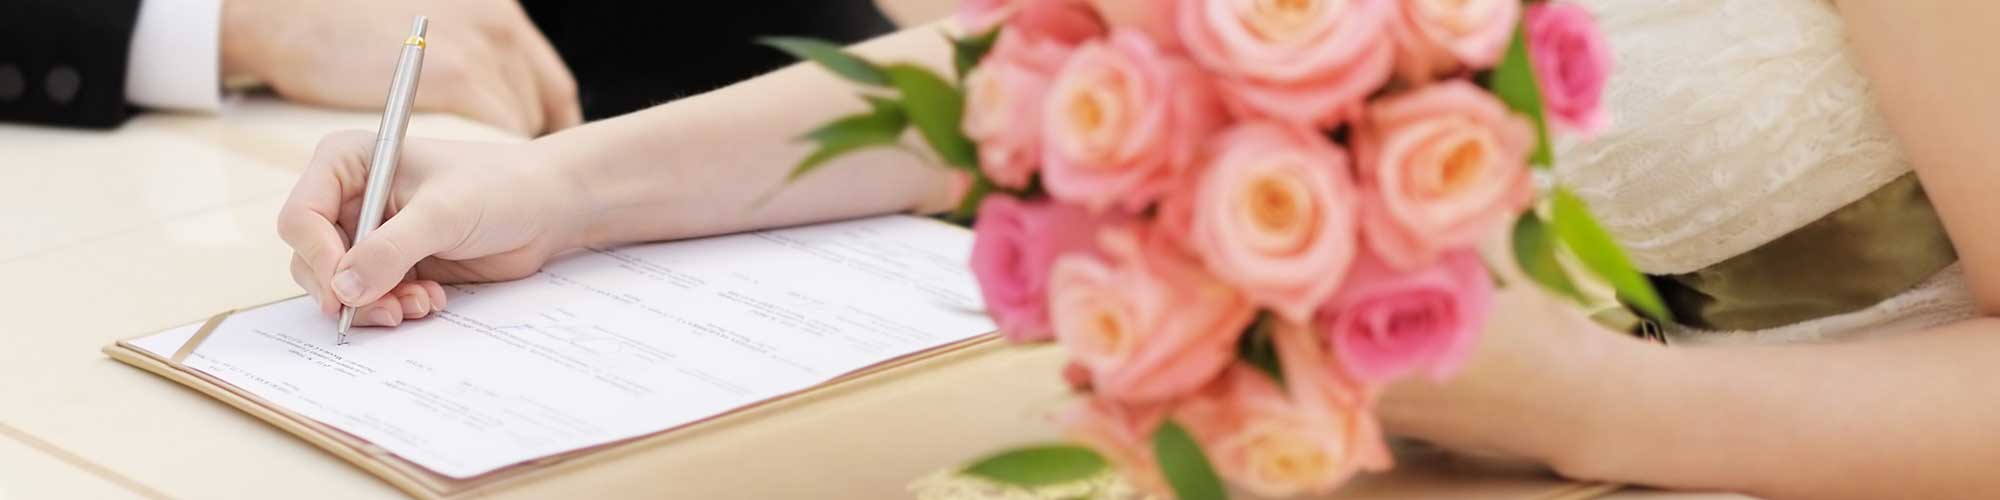 Braut unterzeichnet Heiratsurkunde